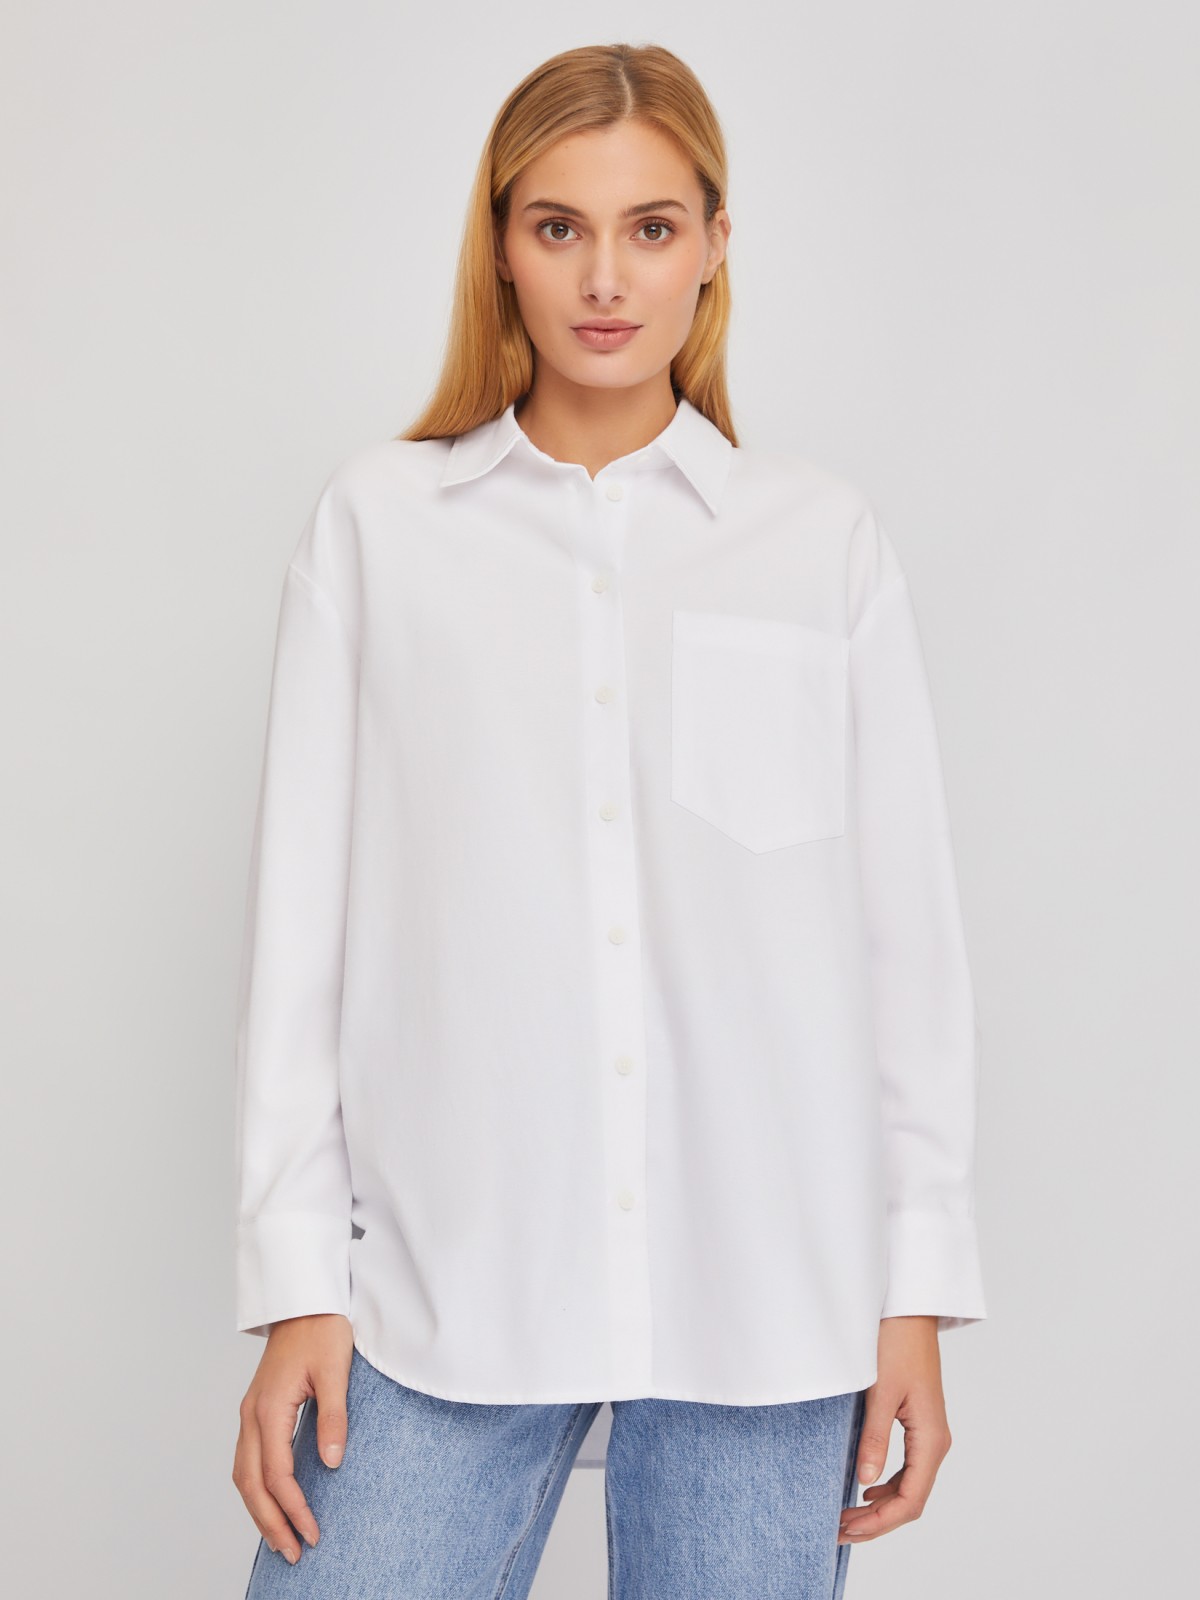 Рубашка свободного удлинённого силуэта оверсайз zolla 024111159423, цвет белый, размер XS - фото 3